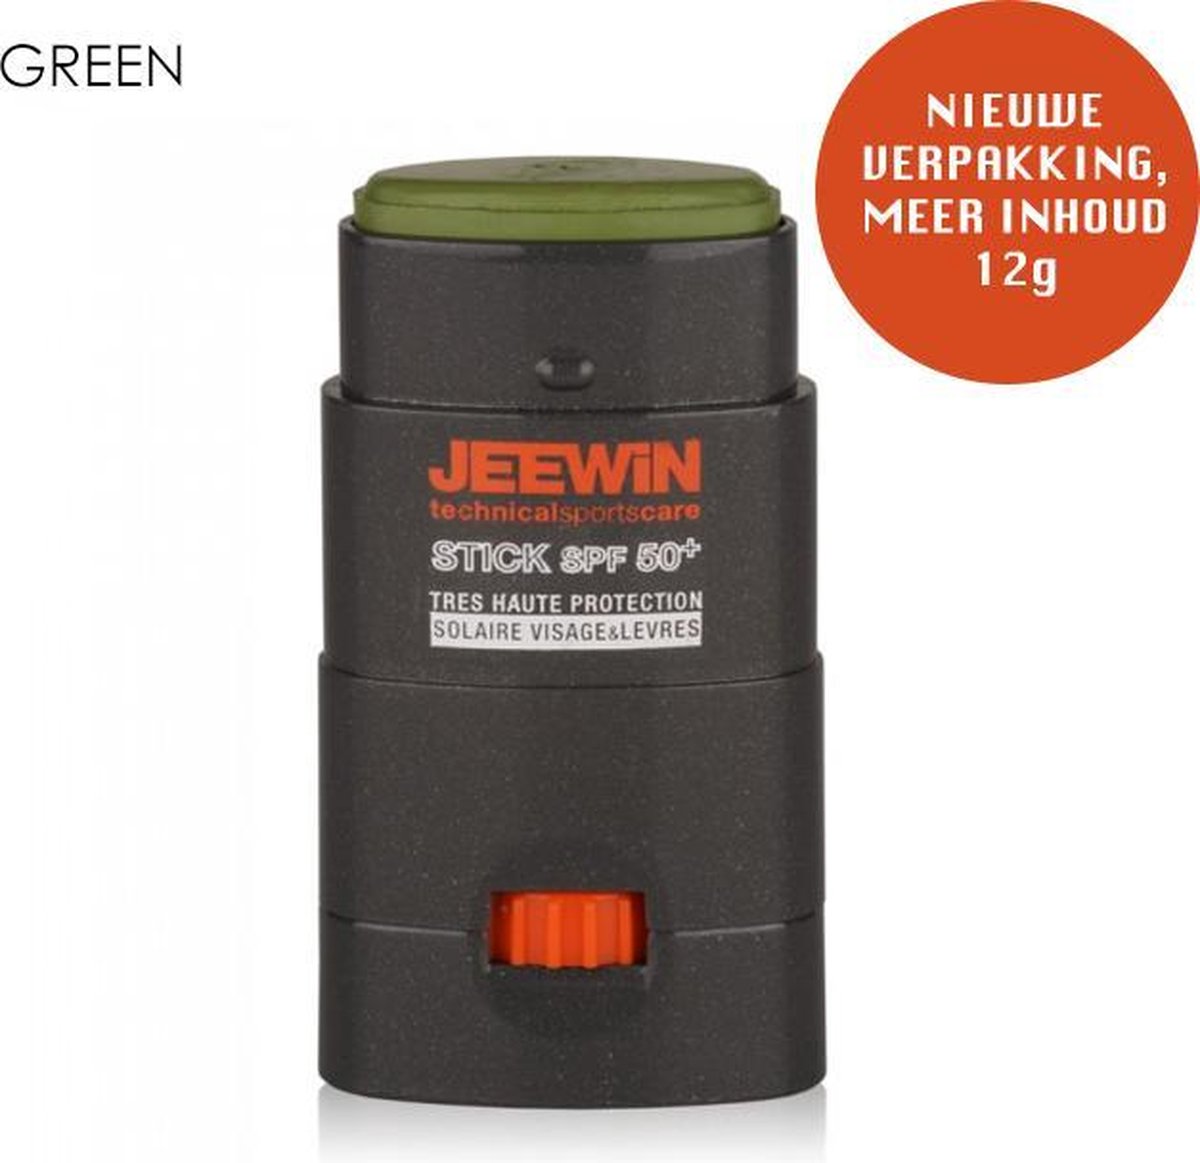 JEEWIN Sunblock Stick SPF 50+ - GROEN | ook geschikt voor bescherming tattoo | 100% Minerale zonbescherming UVA/UVB | Geen NANO en Microplastics | Trotse sponsor van Sportclub Only Friends